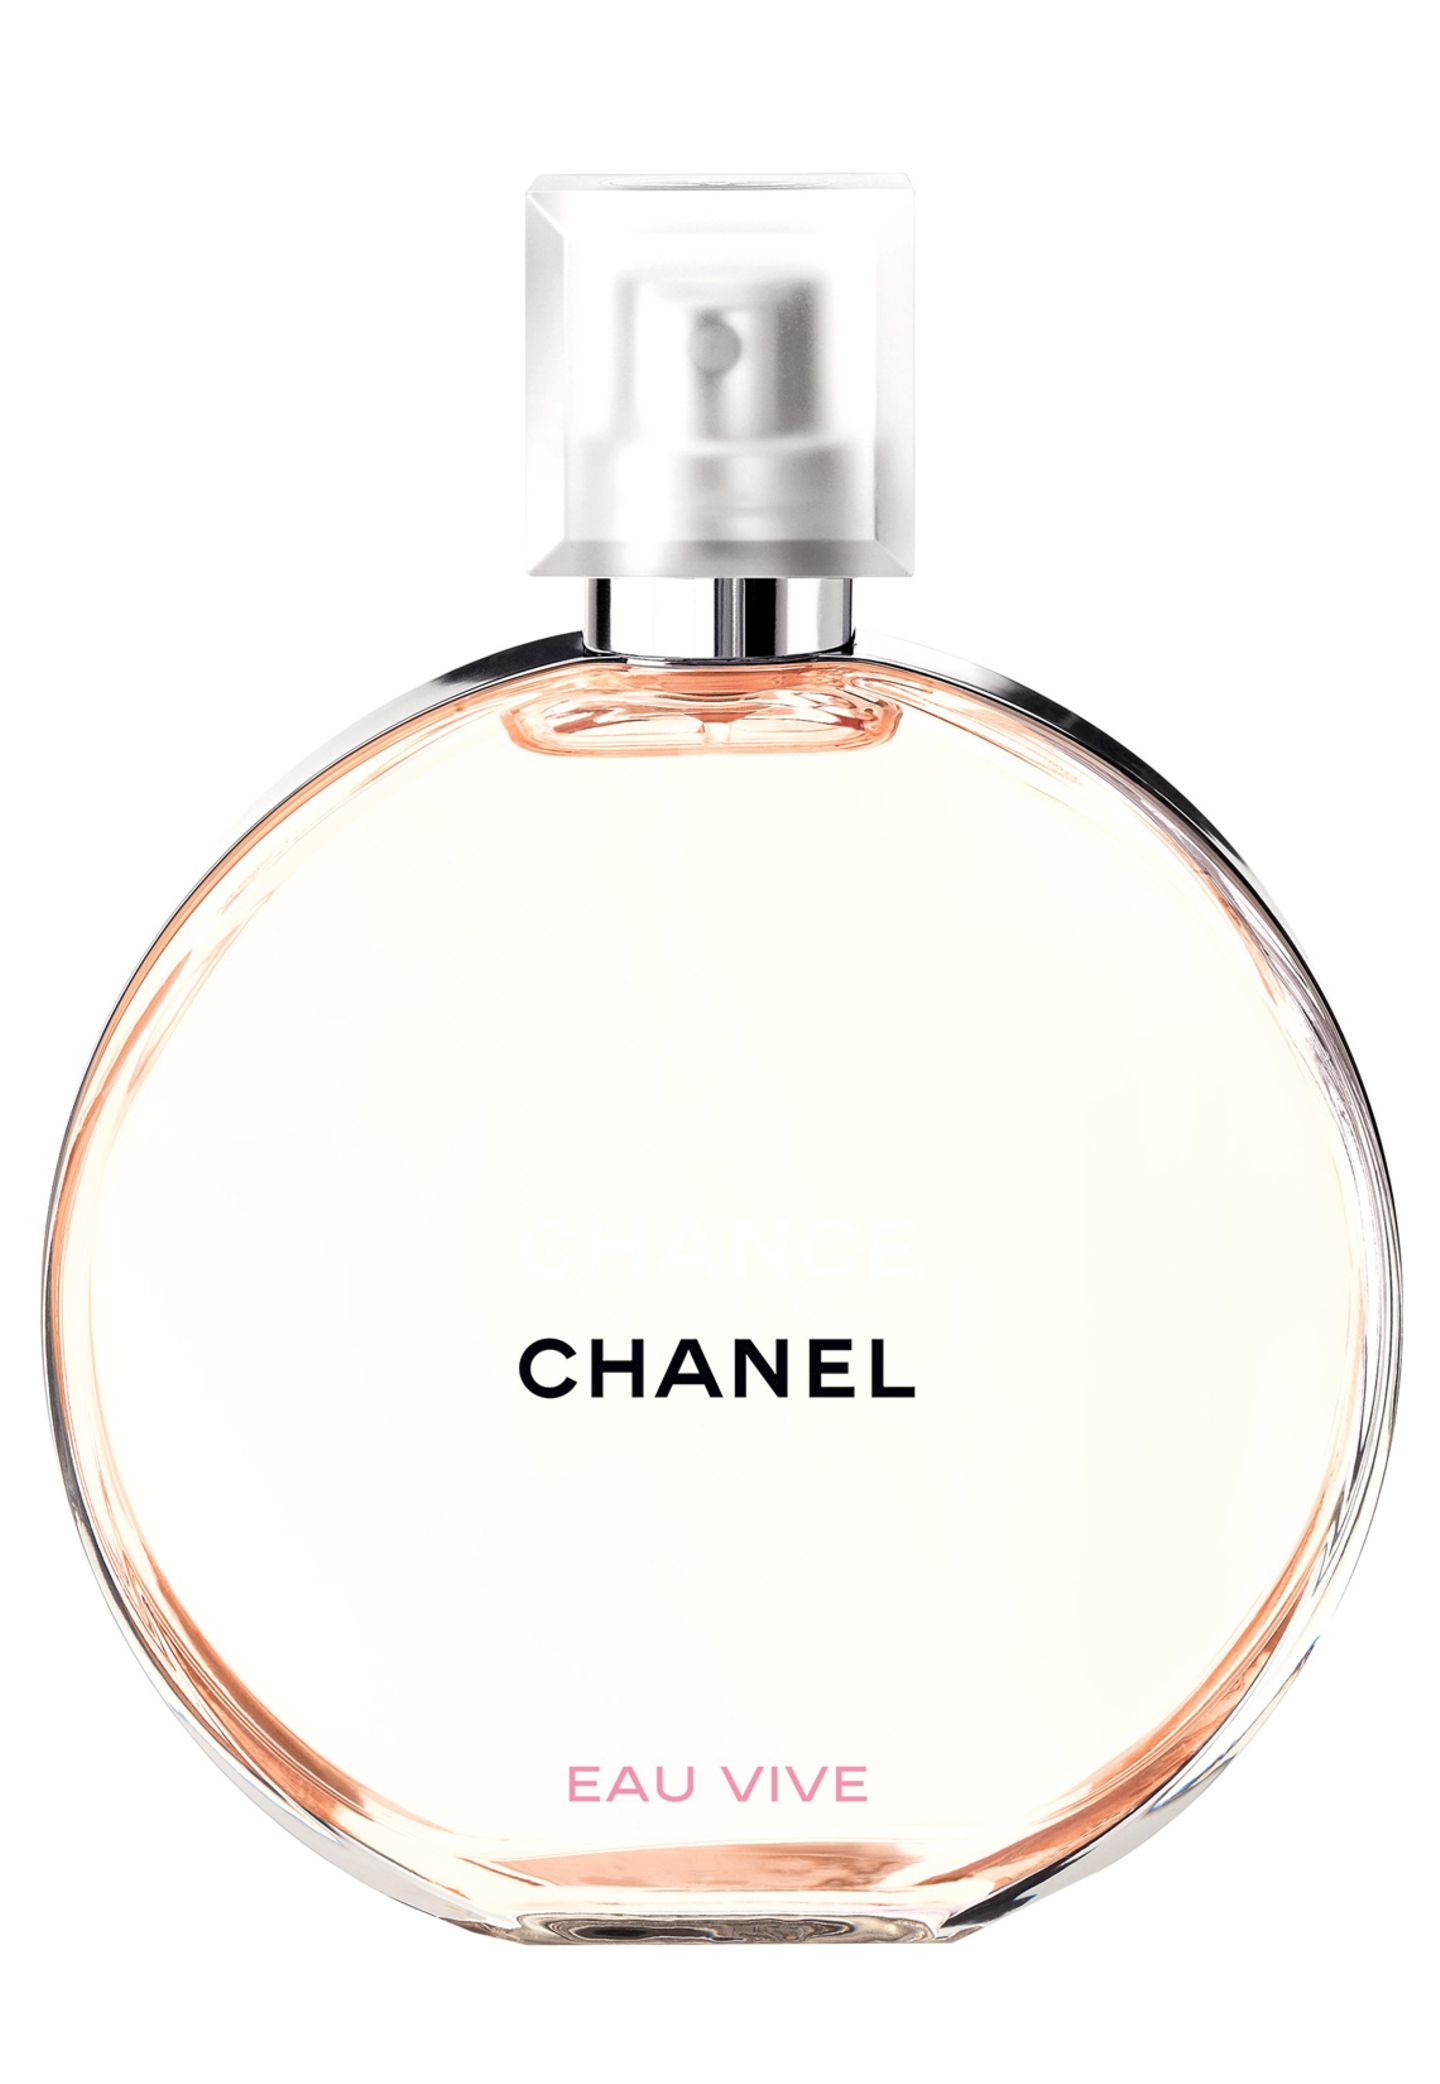 Erfrischend und elegant durch Grapefruit, Jasmin und weißen Moschus: "Chance – Eau Vive" von Chanel, EdT, 50 ml, ca. 70 Euro